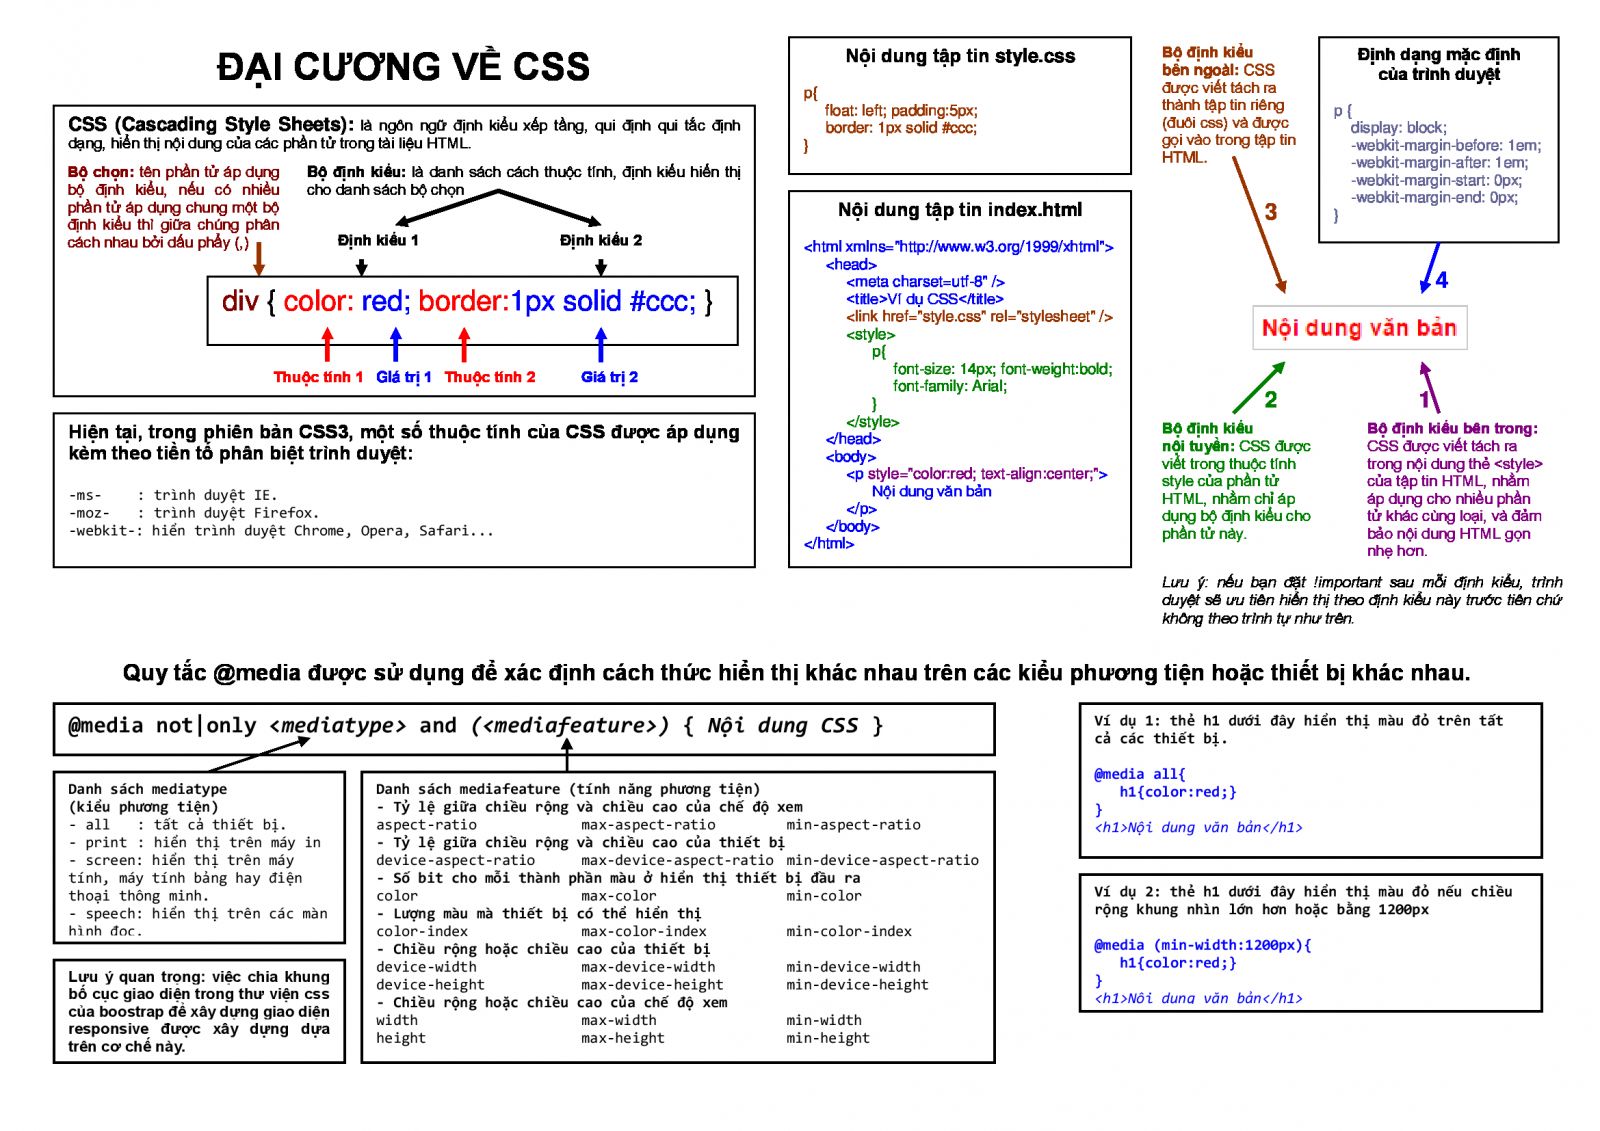 Đại cương về CSS